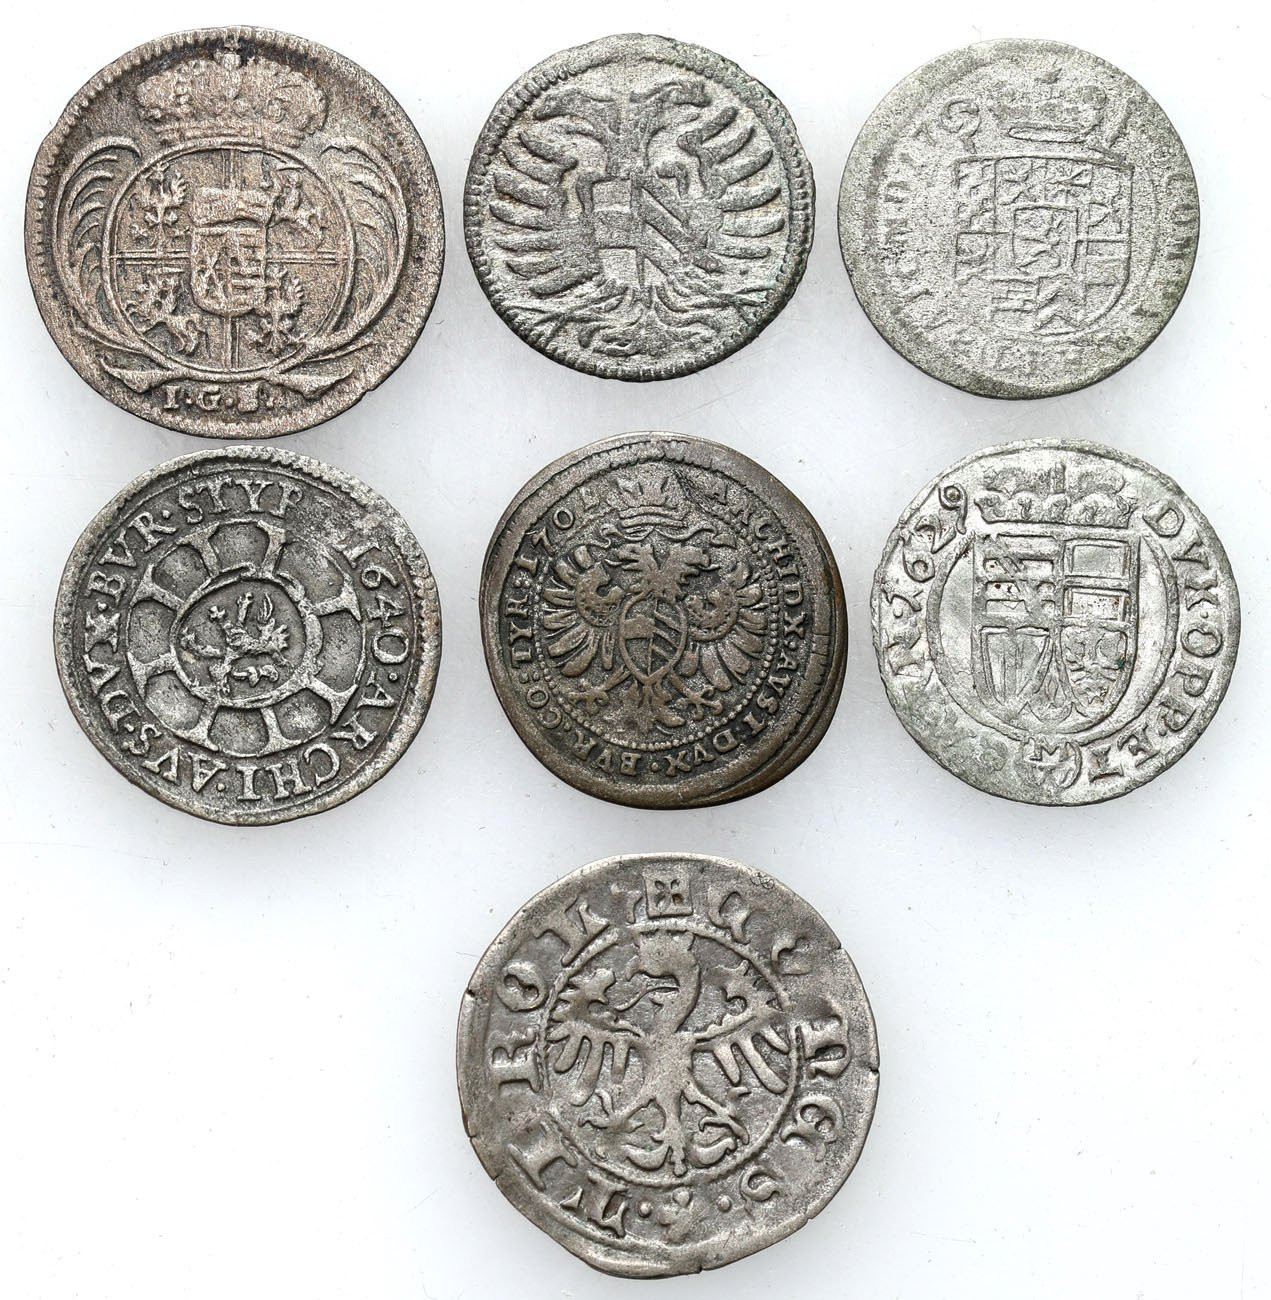 Europa, XVII-XVIII wiek. Krajcar, 1/48 talara, 3 greszele, zestaw 7 monet.